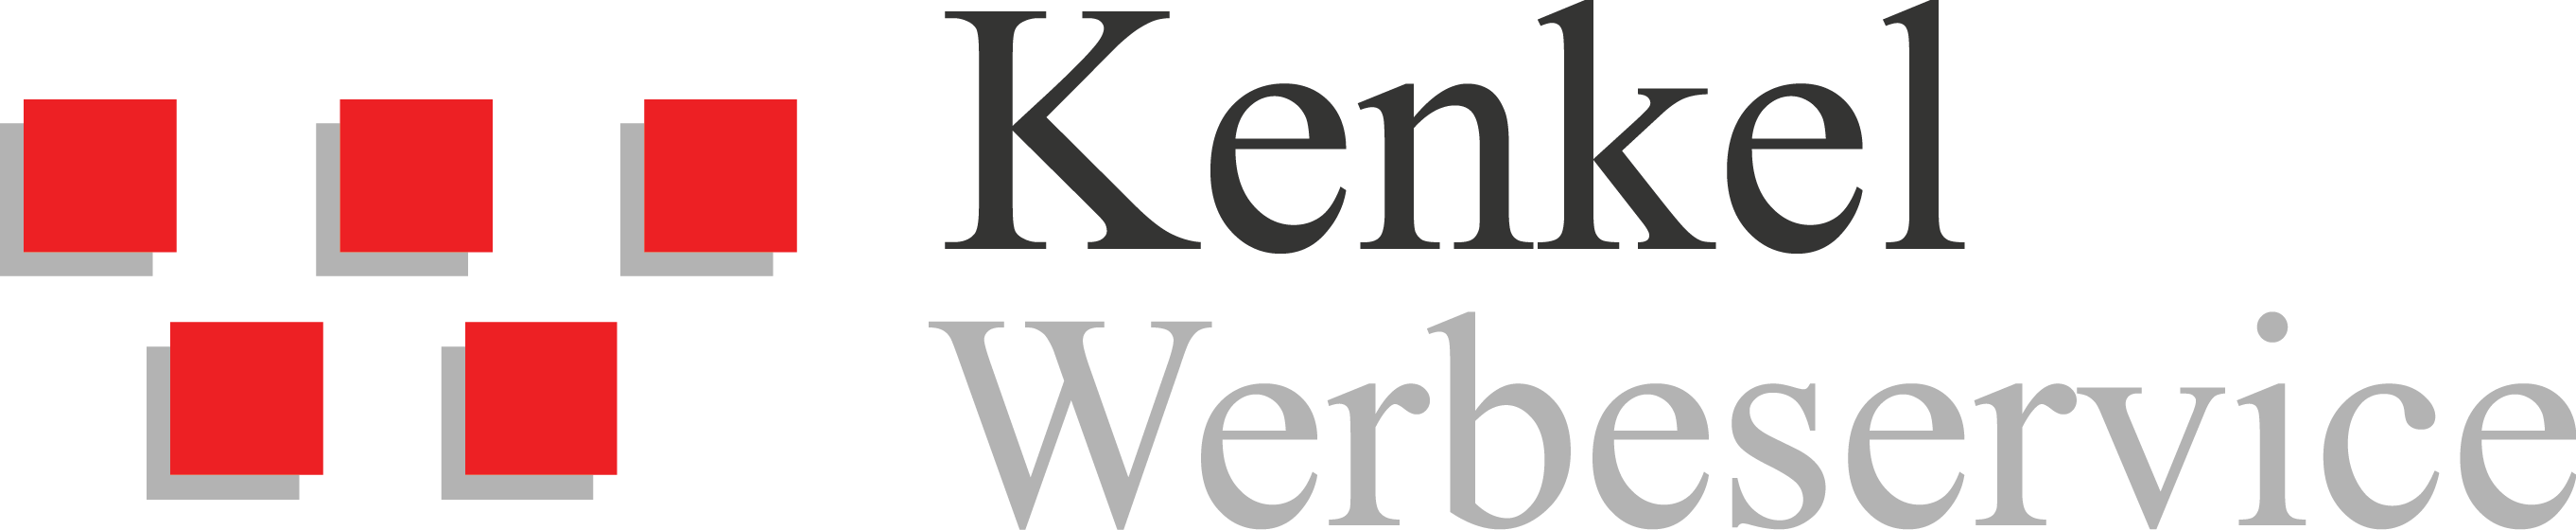 Kenkel Werbeservice Logo